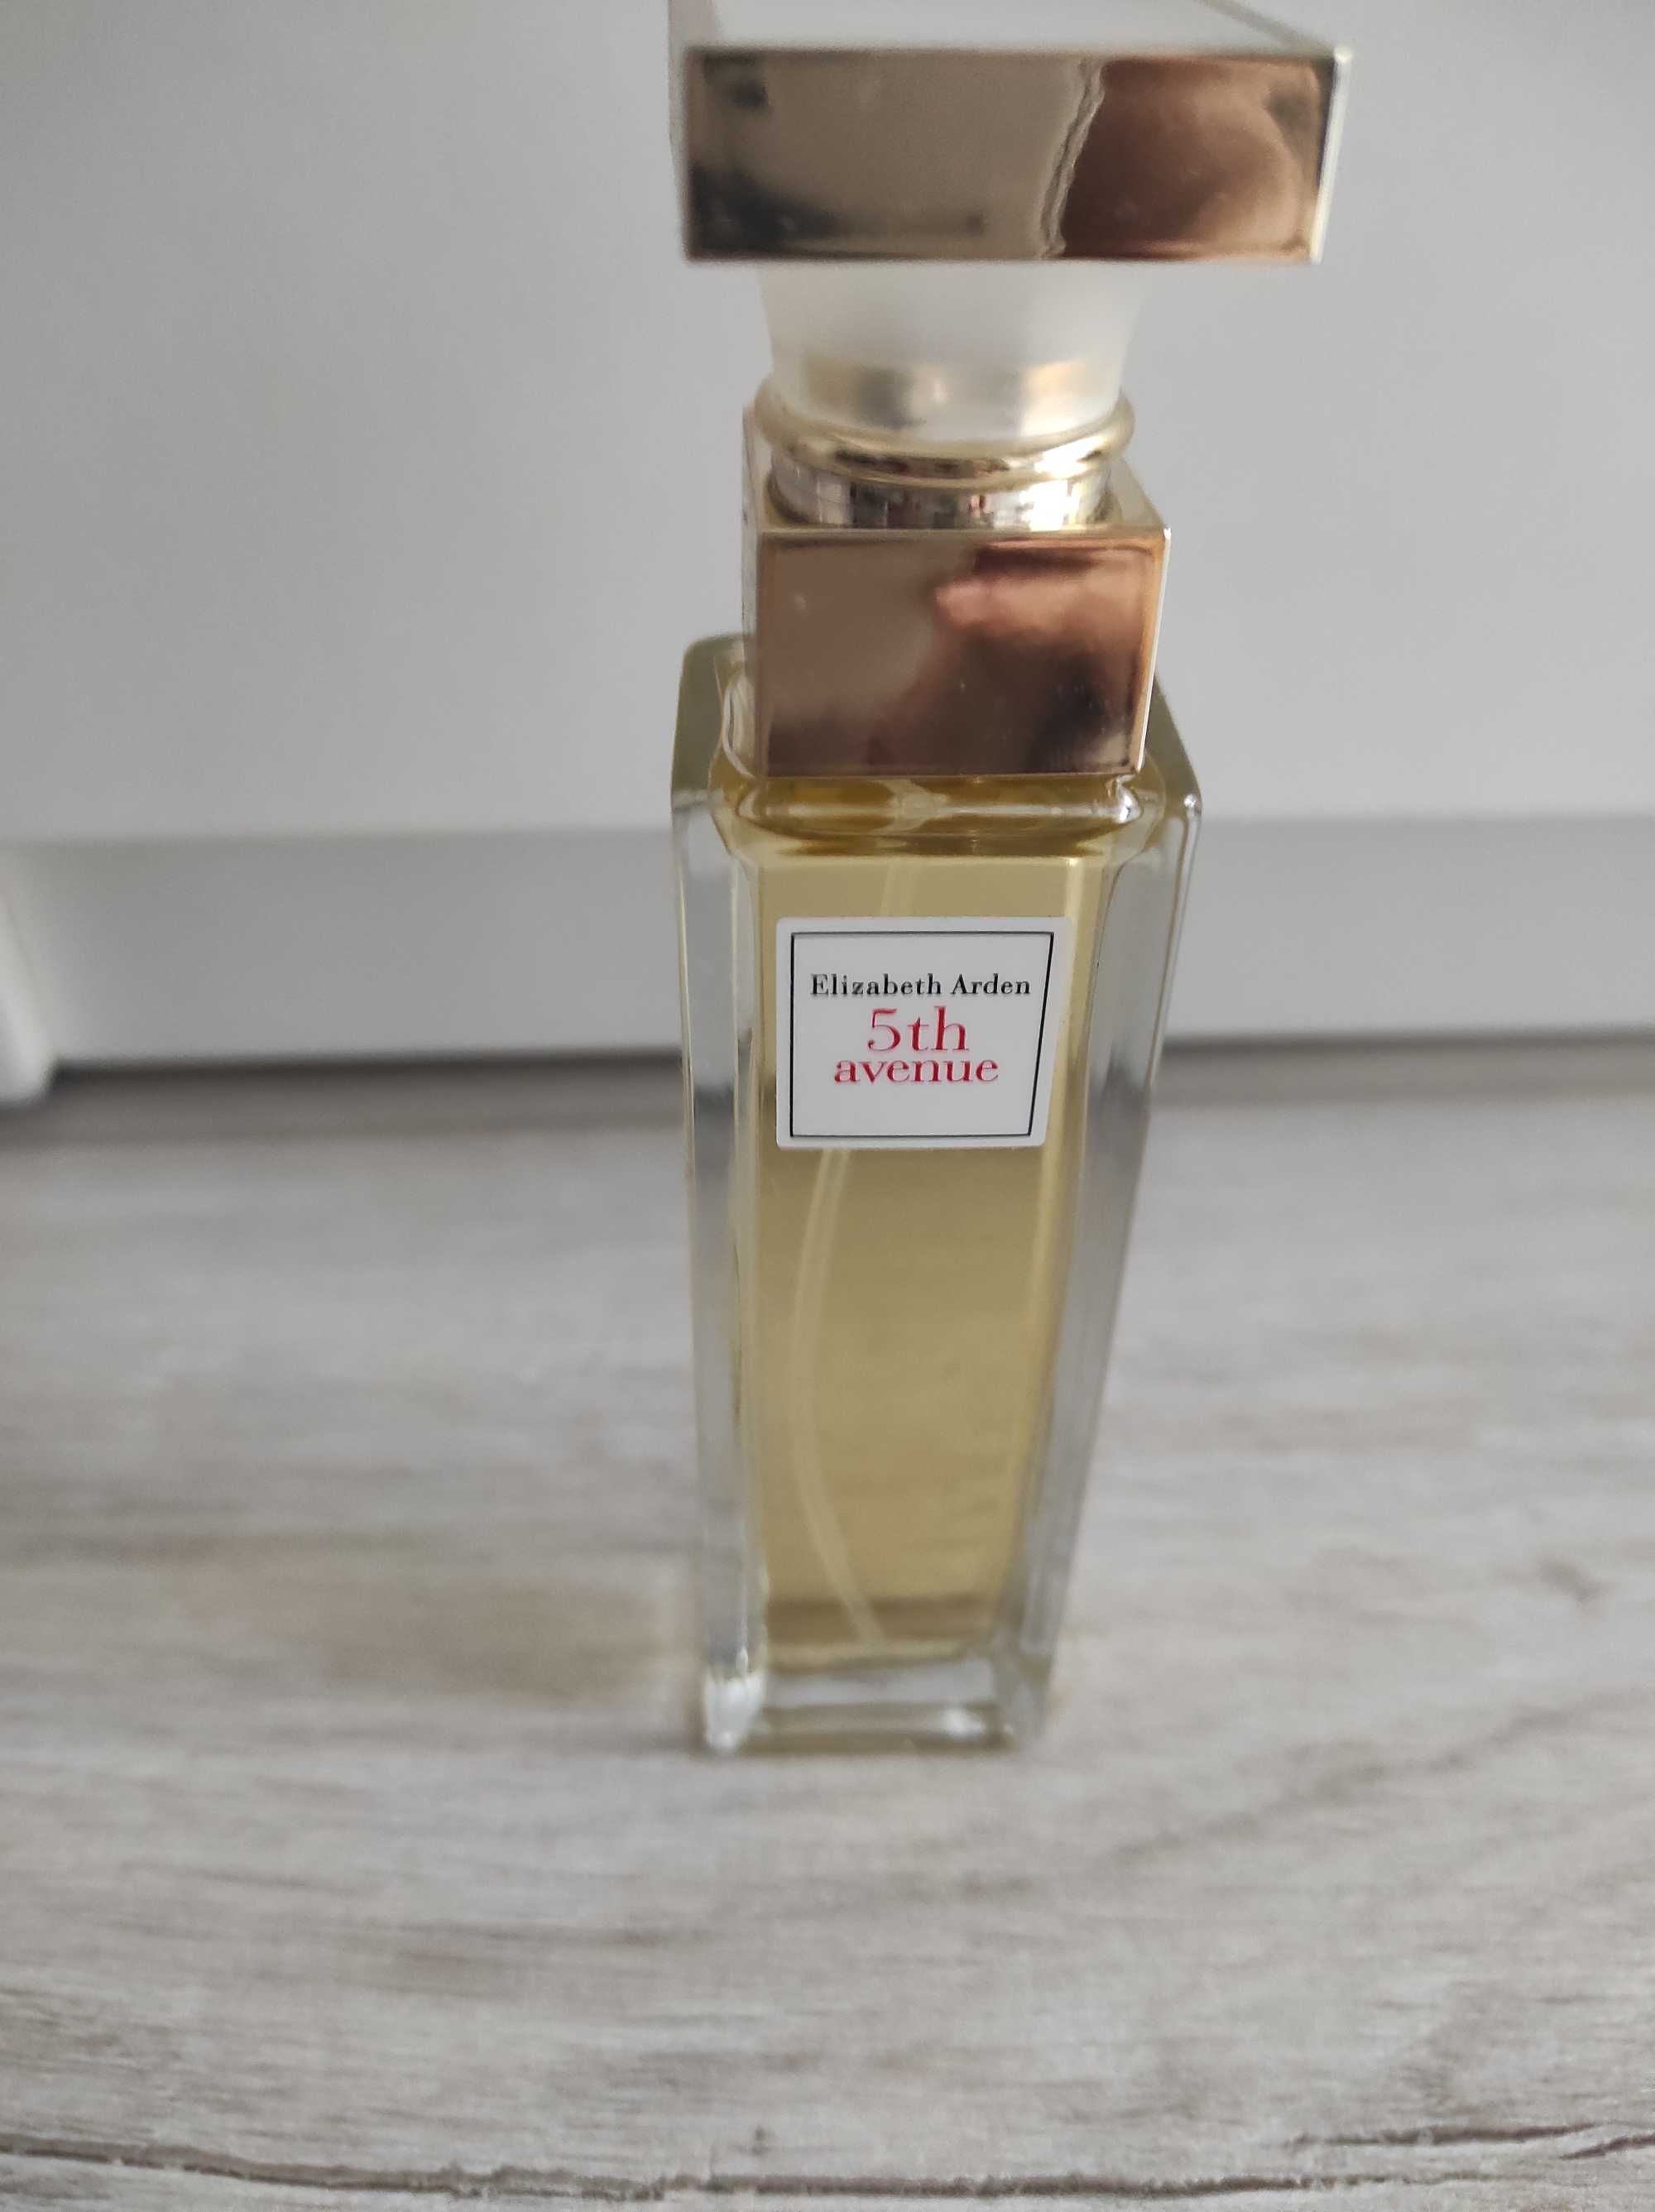 Perfumy Elizabeth Arden 5 th avenue damskie,30 ml